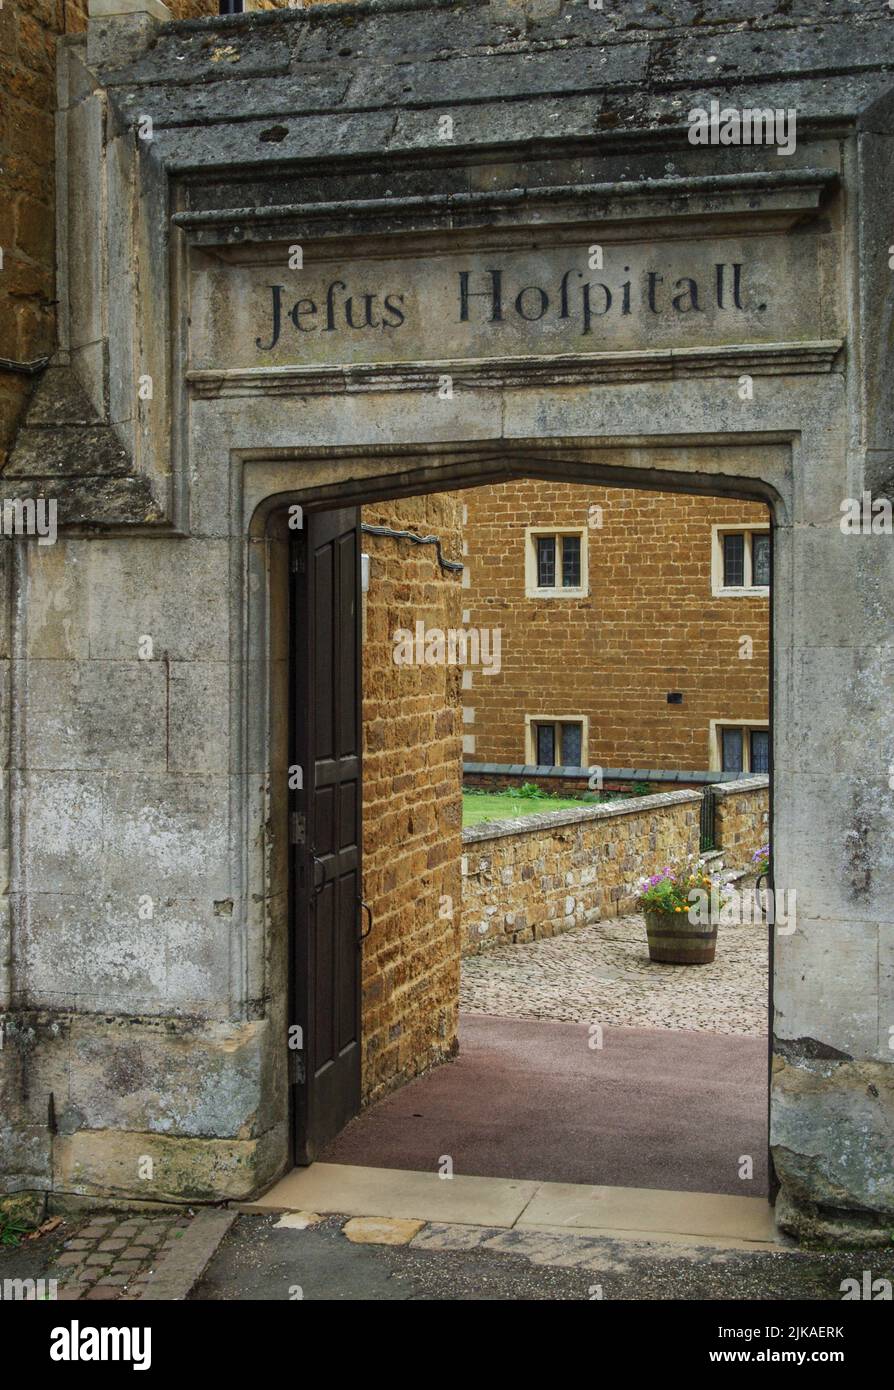 Ingresso originale, con iscrizione al Jesus Hospital, costruito nel 1591, Rothwell, Northamptonshire, Regno Unito; che porta ad almshouses di una data successiva. Foto Stock